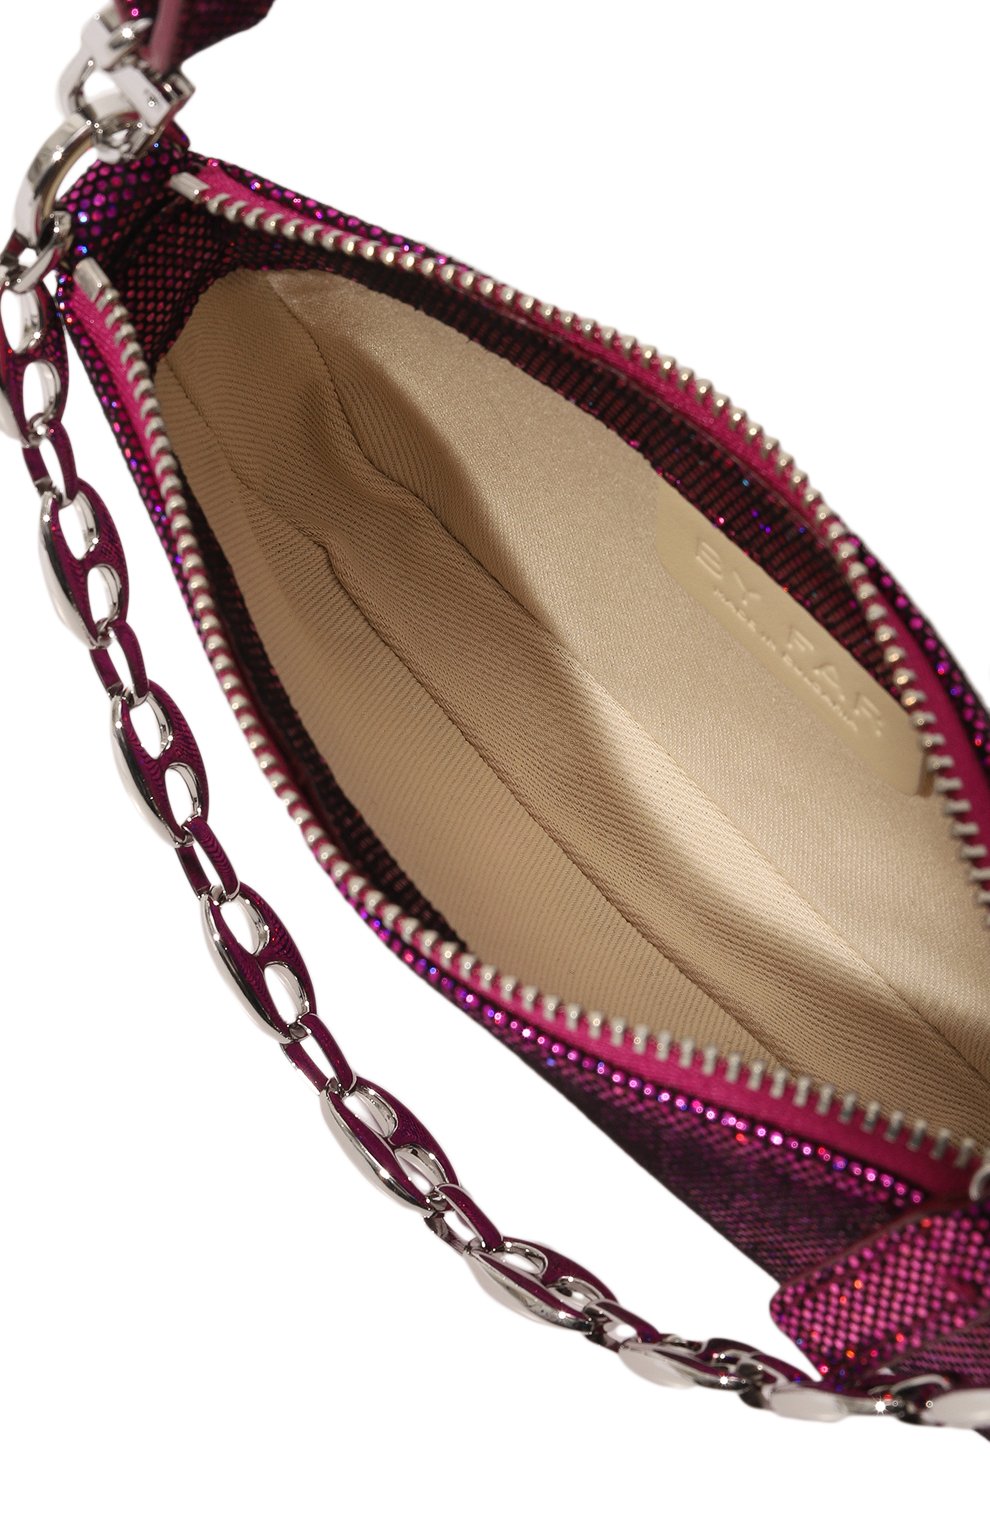 Женская сумка rachel mini BY FAR фуксия цвета, арт. 23CRMIRAFCHDDLSMA | Фото 5 (Сумки-технические: Сумки top-handle; Материал: Натуральная кожа; Размер: mini)